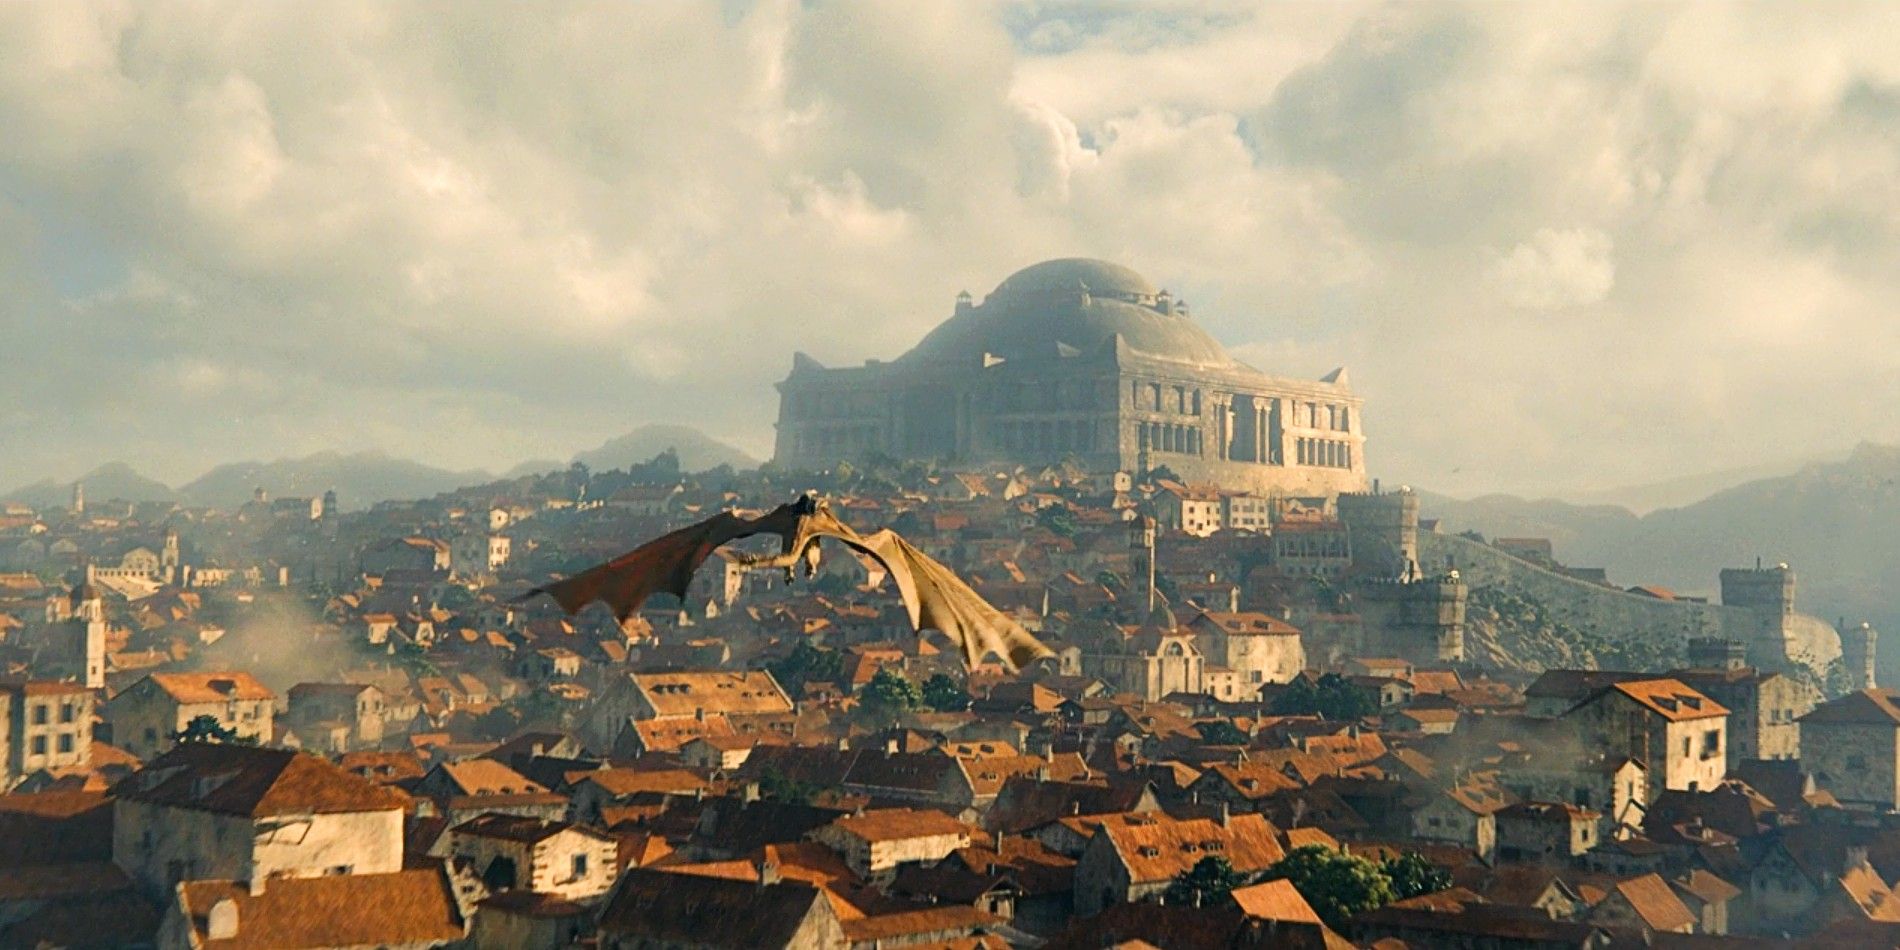 Milly Alcock kaip jaunoji Rhaenyra Targaryen ant Syrax užpakalyje Drakono namuose su King's Landing fone